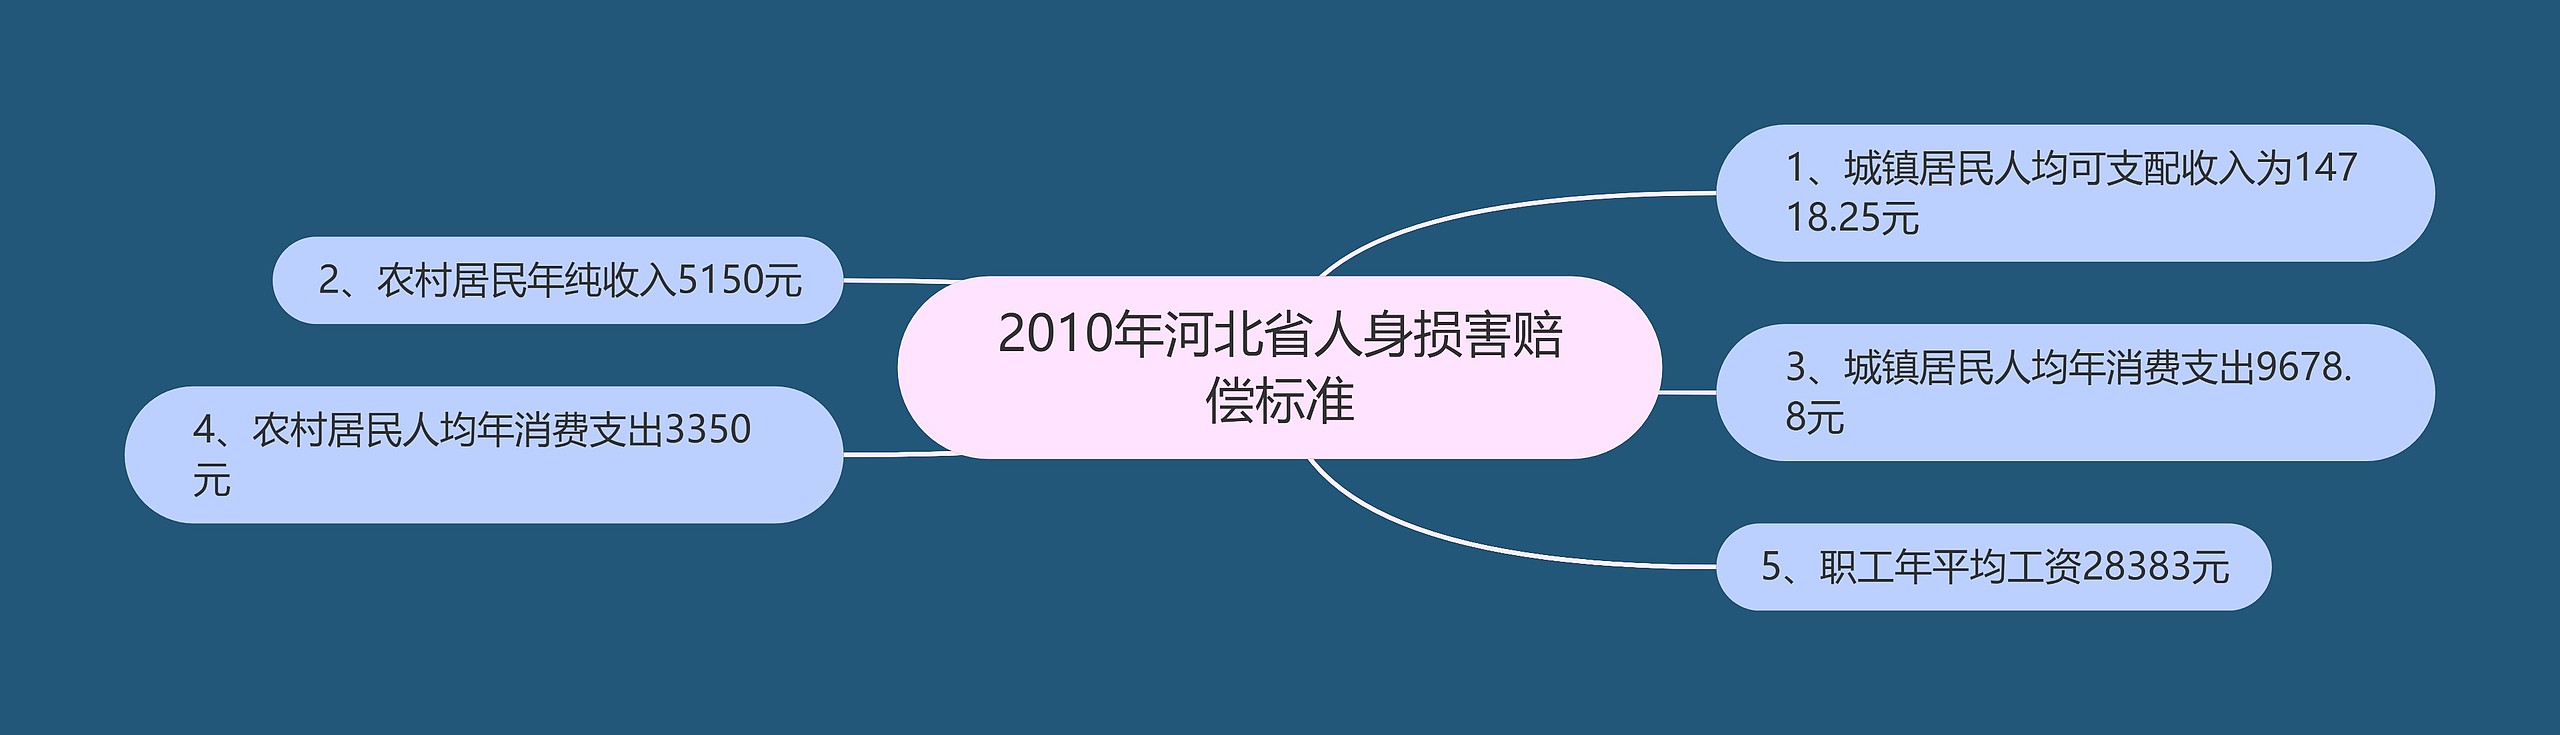 2010年河北省人身损害赔偿标准思维导图